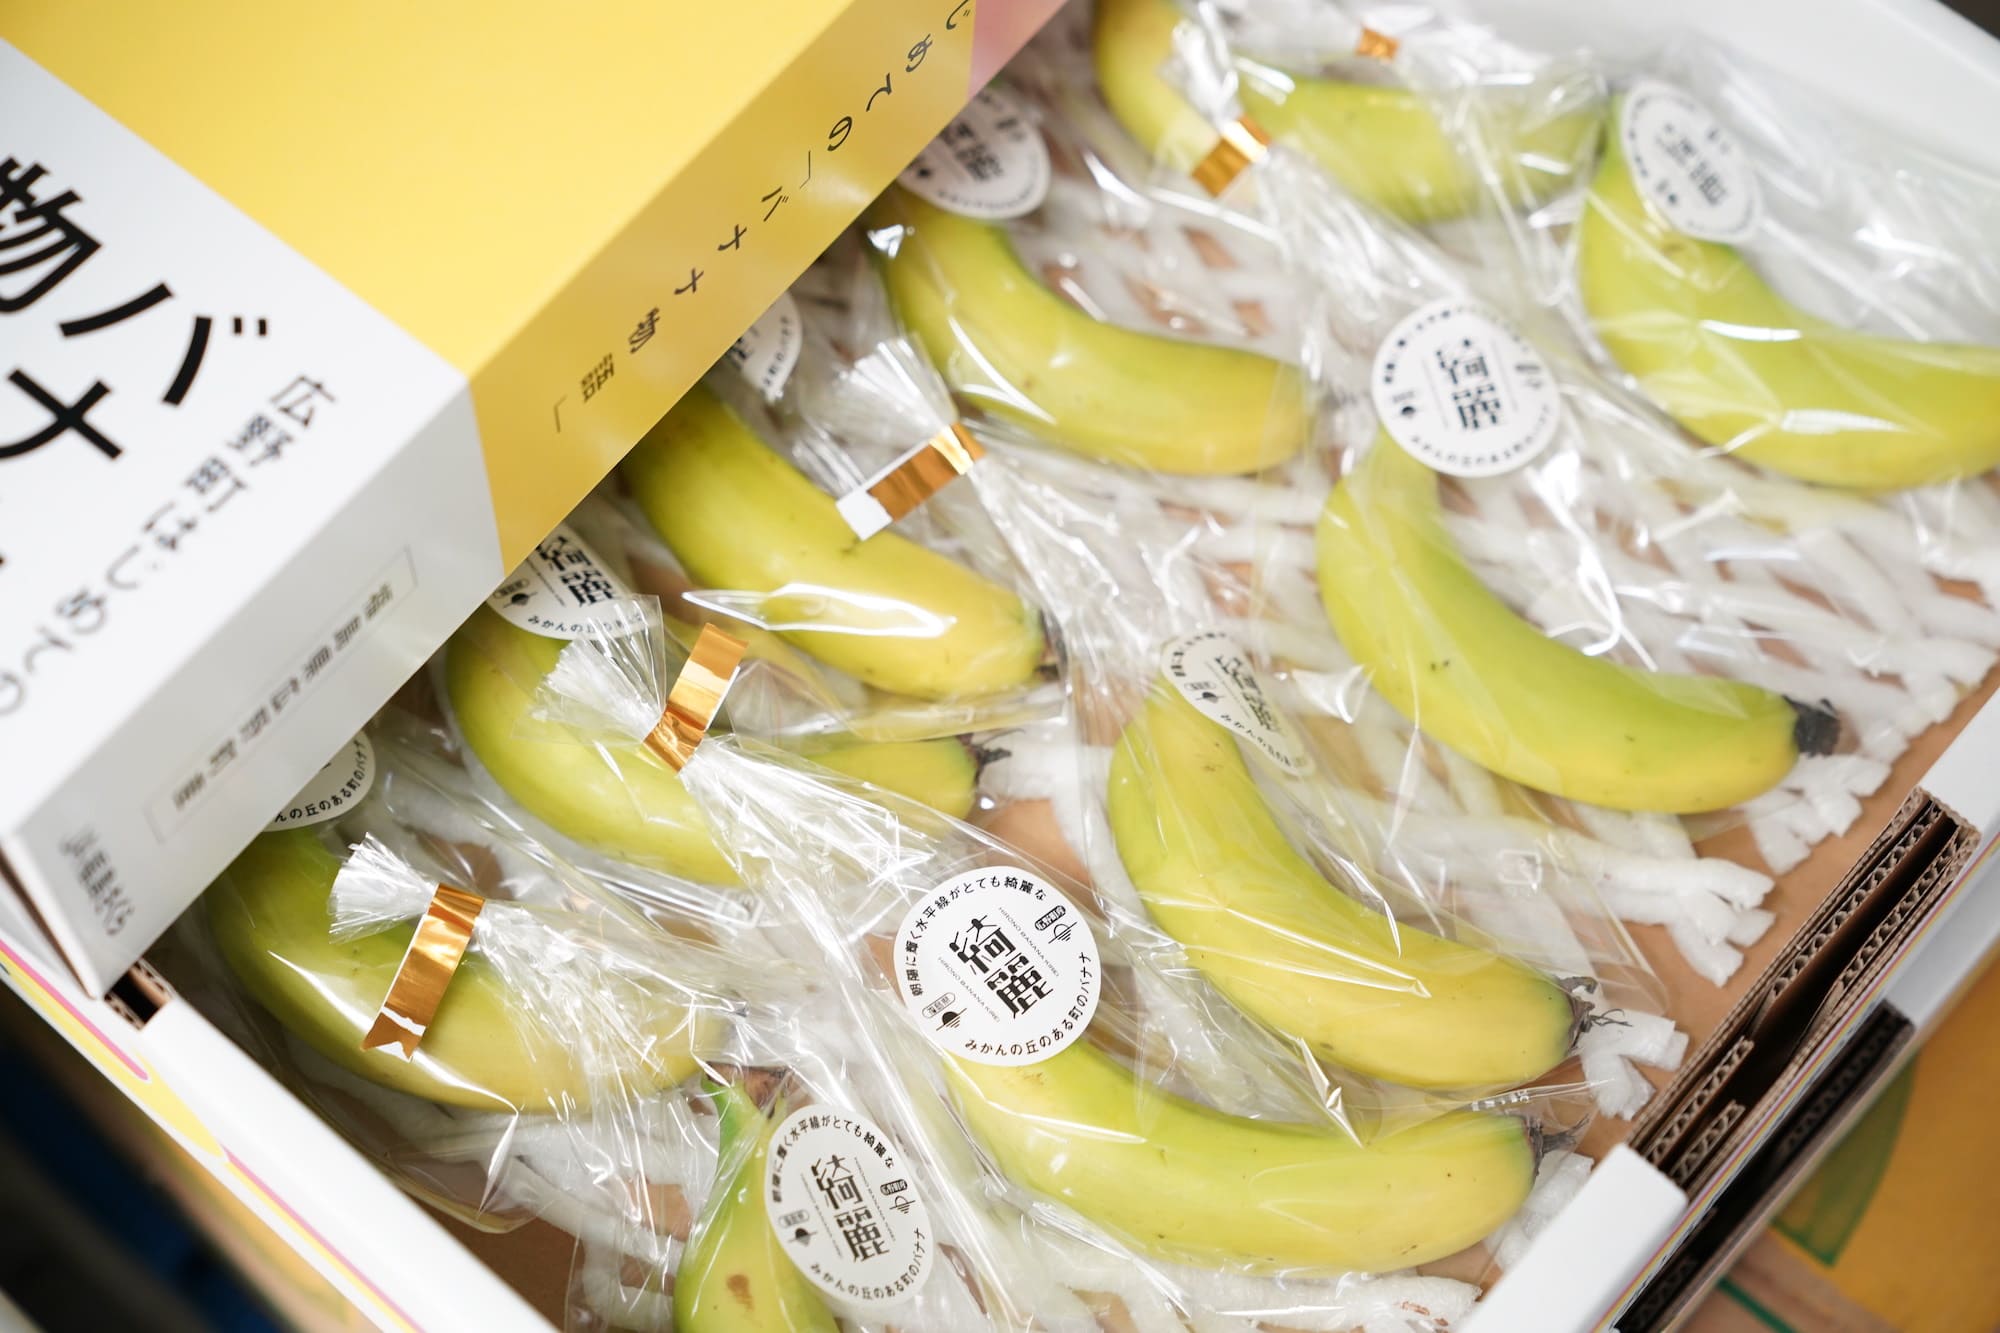 クリーミーで濃厚なおいしさが特徴の広野町産バナナ「綺麗」